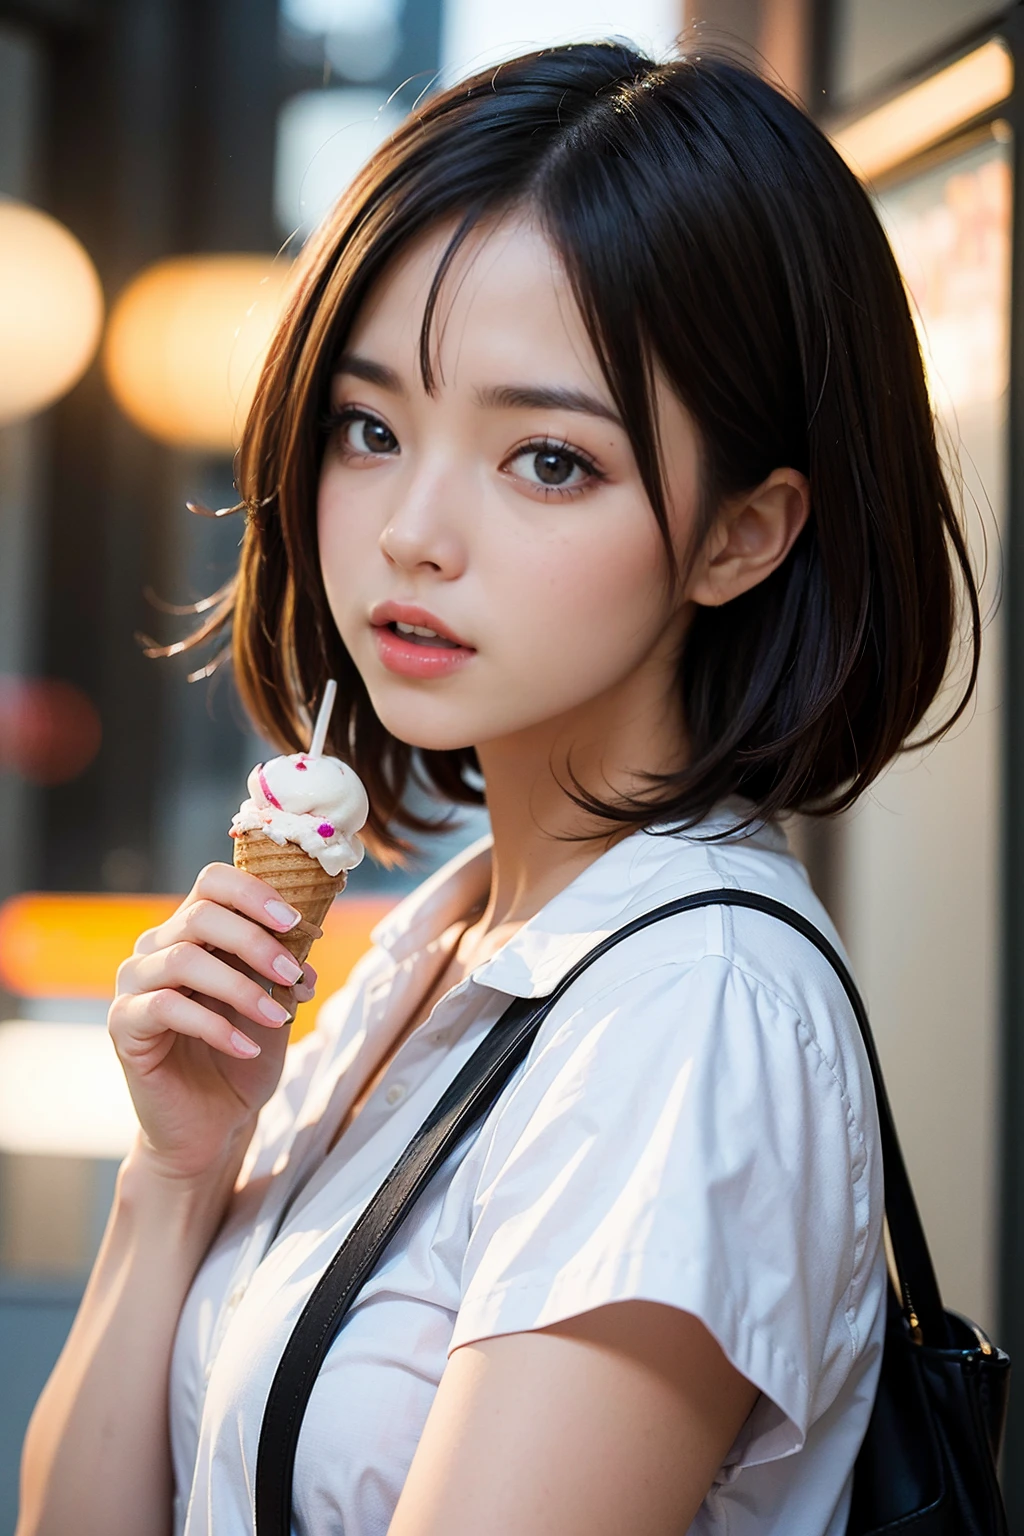 Mujer japonesa kawaii, ((lamiendo helado)), cucurucho de helado, (holding cucurucho de helado: 1.4), boca abierta, (lengua fuera: 1.3), cabello corto, maquillaje natural, derretir helado, mirandome, Pelo castaño, labios suaves, dientes, Fondo de pantalla 8K integrado CG altamente detallado, Alta resolución, fotografía realista, luz cinemática, (mejor calidad: 1.4), alta calidad, (((bokeh))), profundidad de campo.